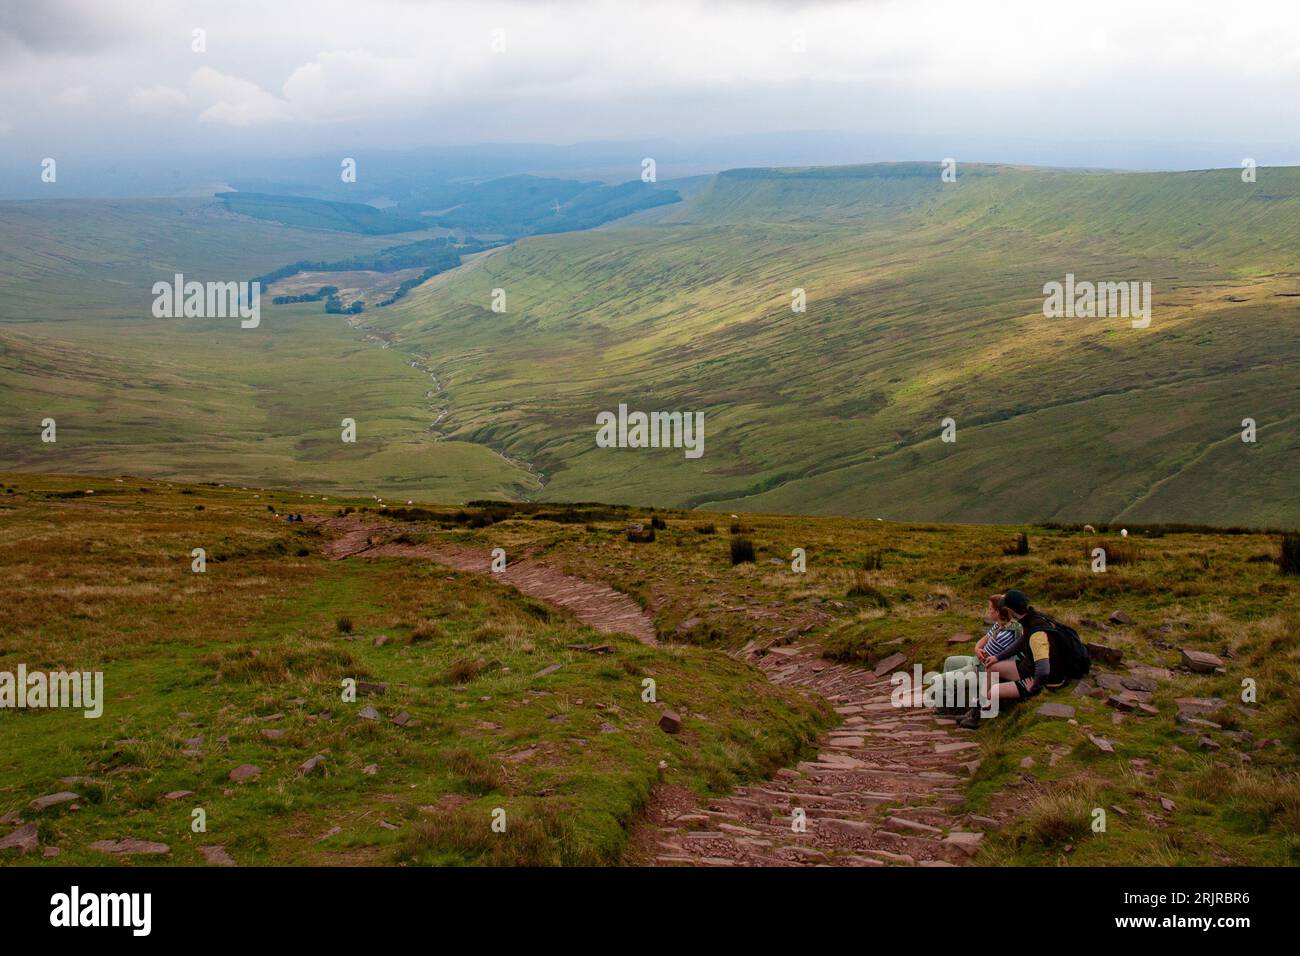 Im Bannau Brycheiniog (Brecon Beacons) Nationalpark, Wales, können sich die Menschen beim Wandern ausruhen Stockfoto